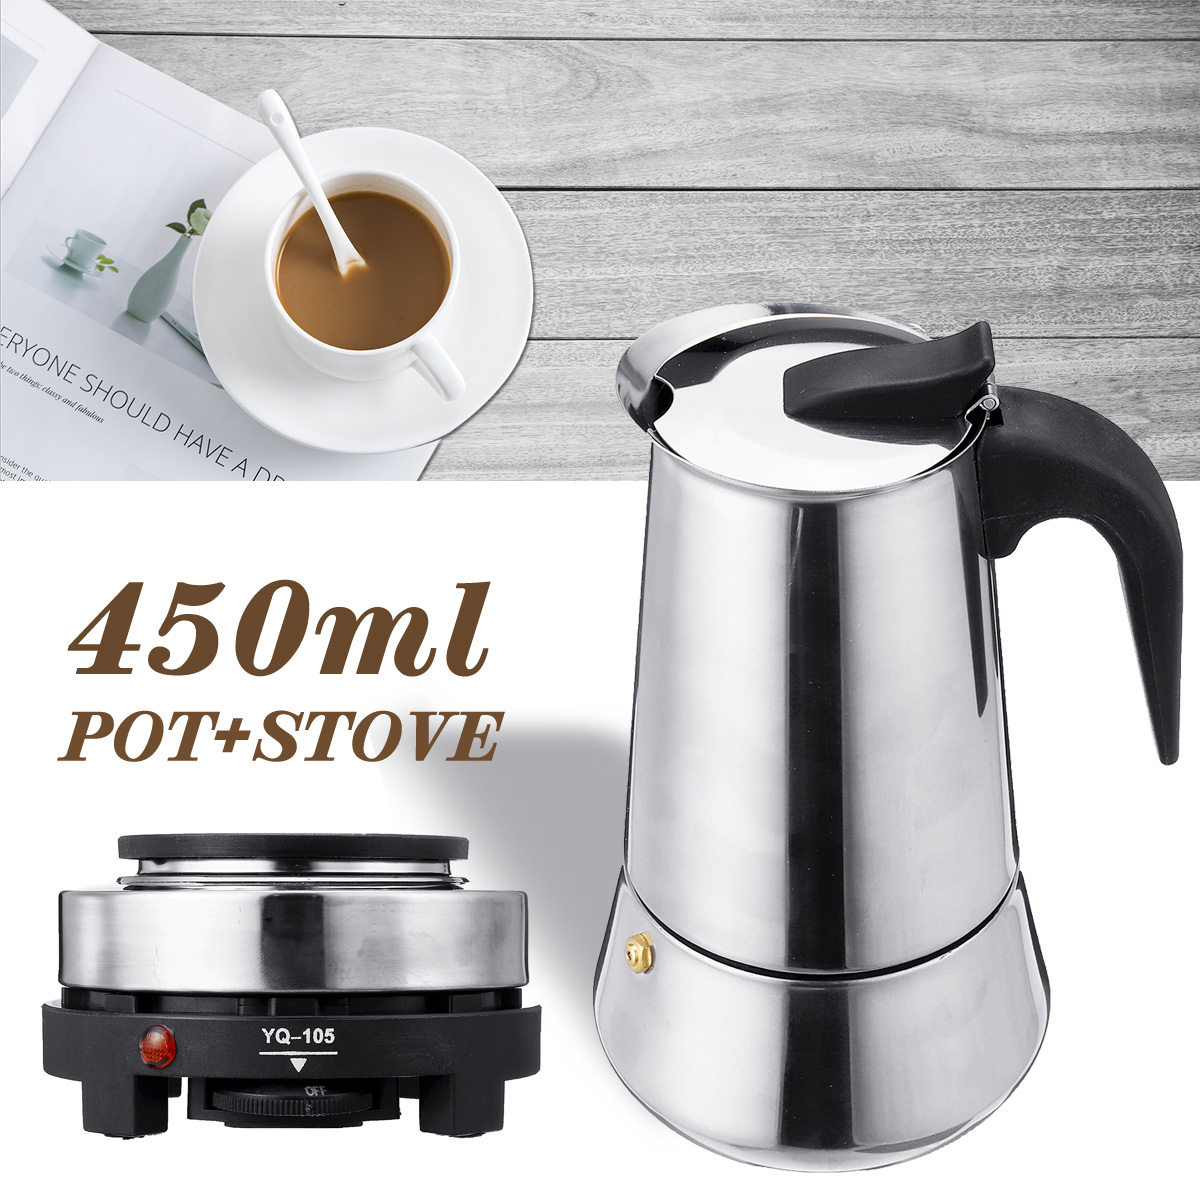 220V 500W 450ml Portable Coffee Espresso Pot Maker & Electric Stove Home Kitchen Tools 83